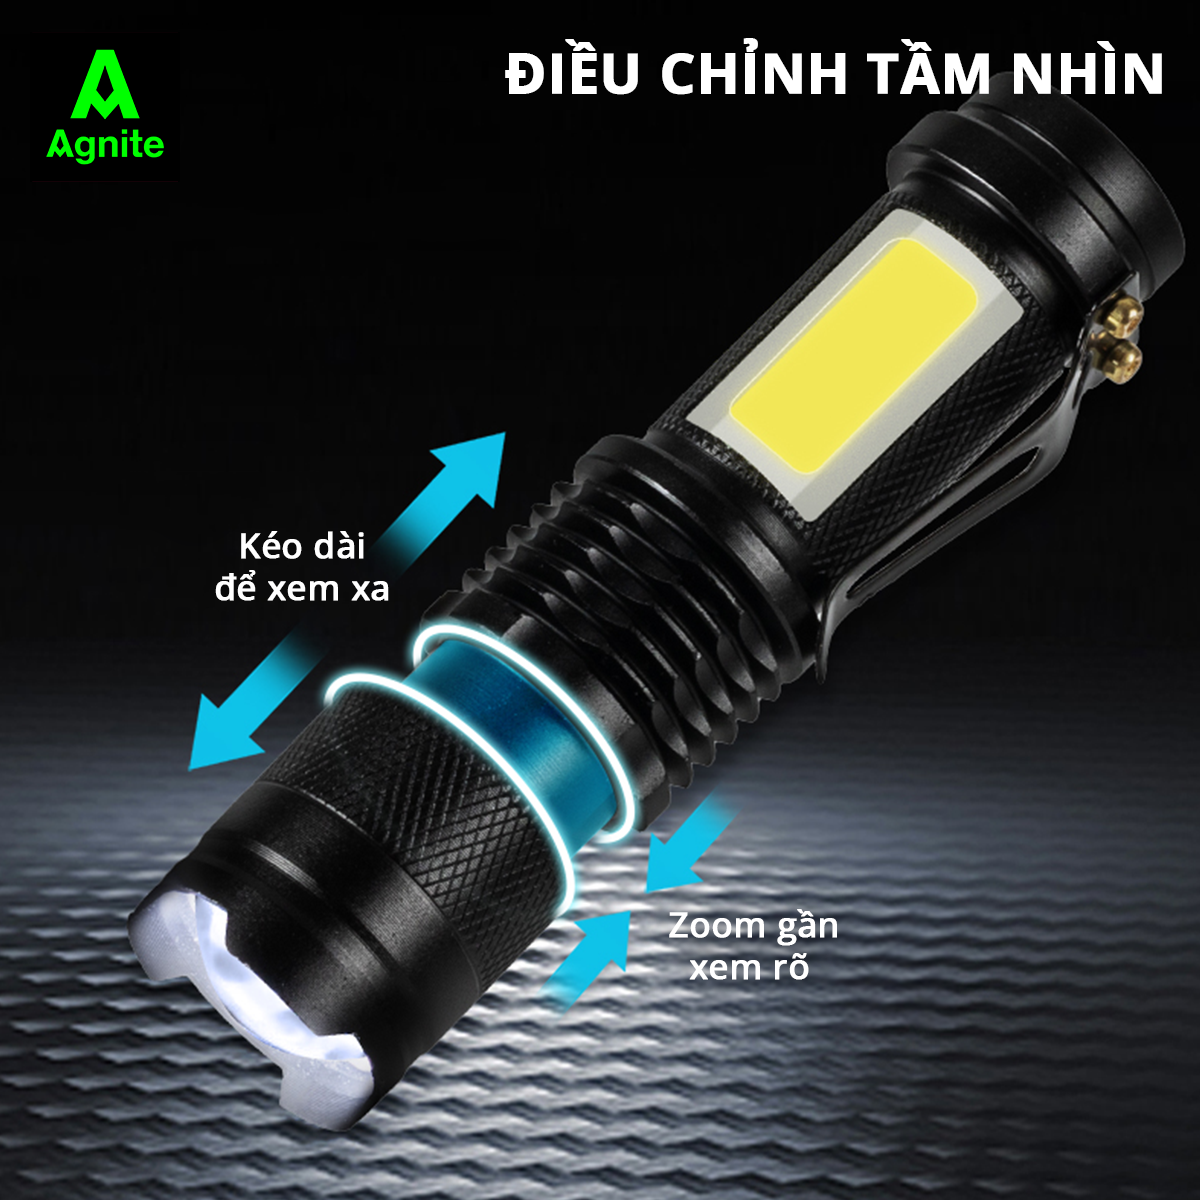 Đèn pin 3 chế độ sáng chính hãng Agnite - thiết kế đầu sạc USB - nhỏ gọn tiện lợi dễ mang theo - VS4231